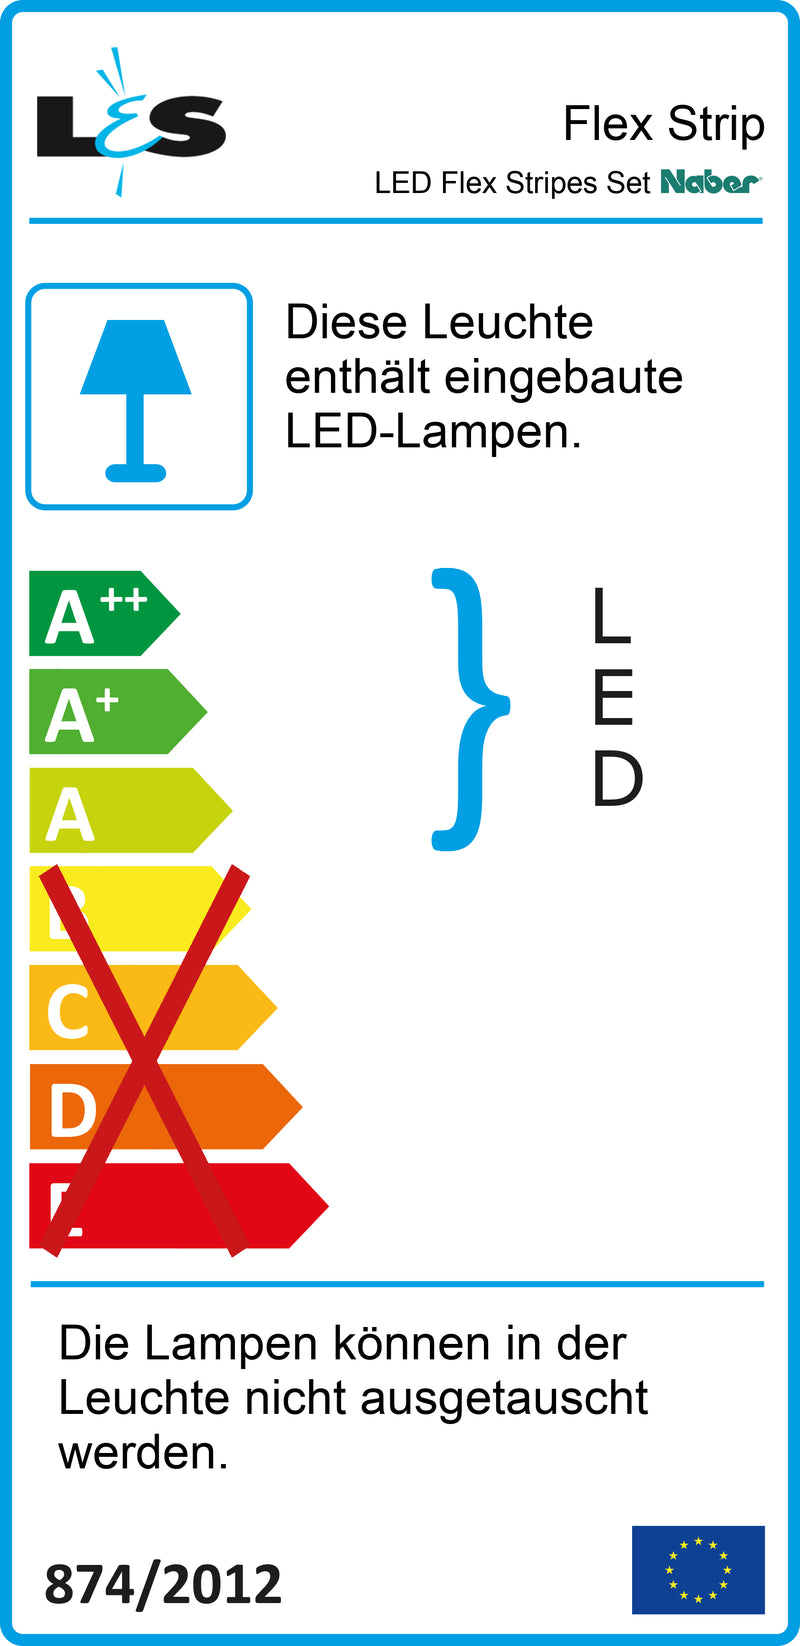 E-Label zu LED Flex Stripes Set Farbwechsel als Variante weiß von Naber GmbH in der Kategorie Lichttechnik in Österreich auf conceptshop.at